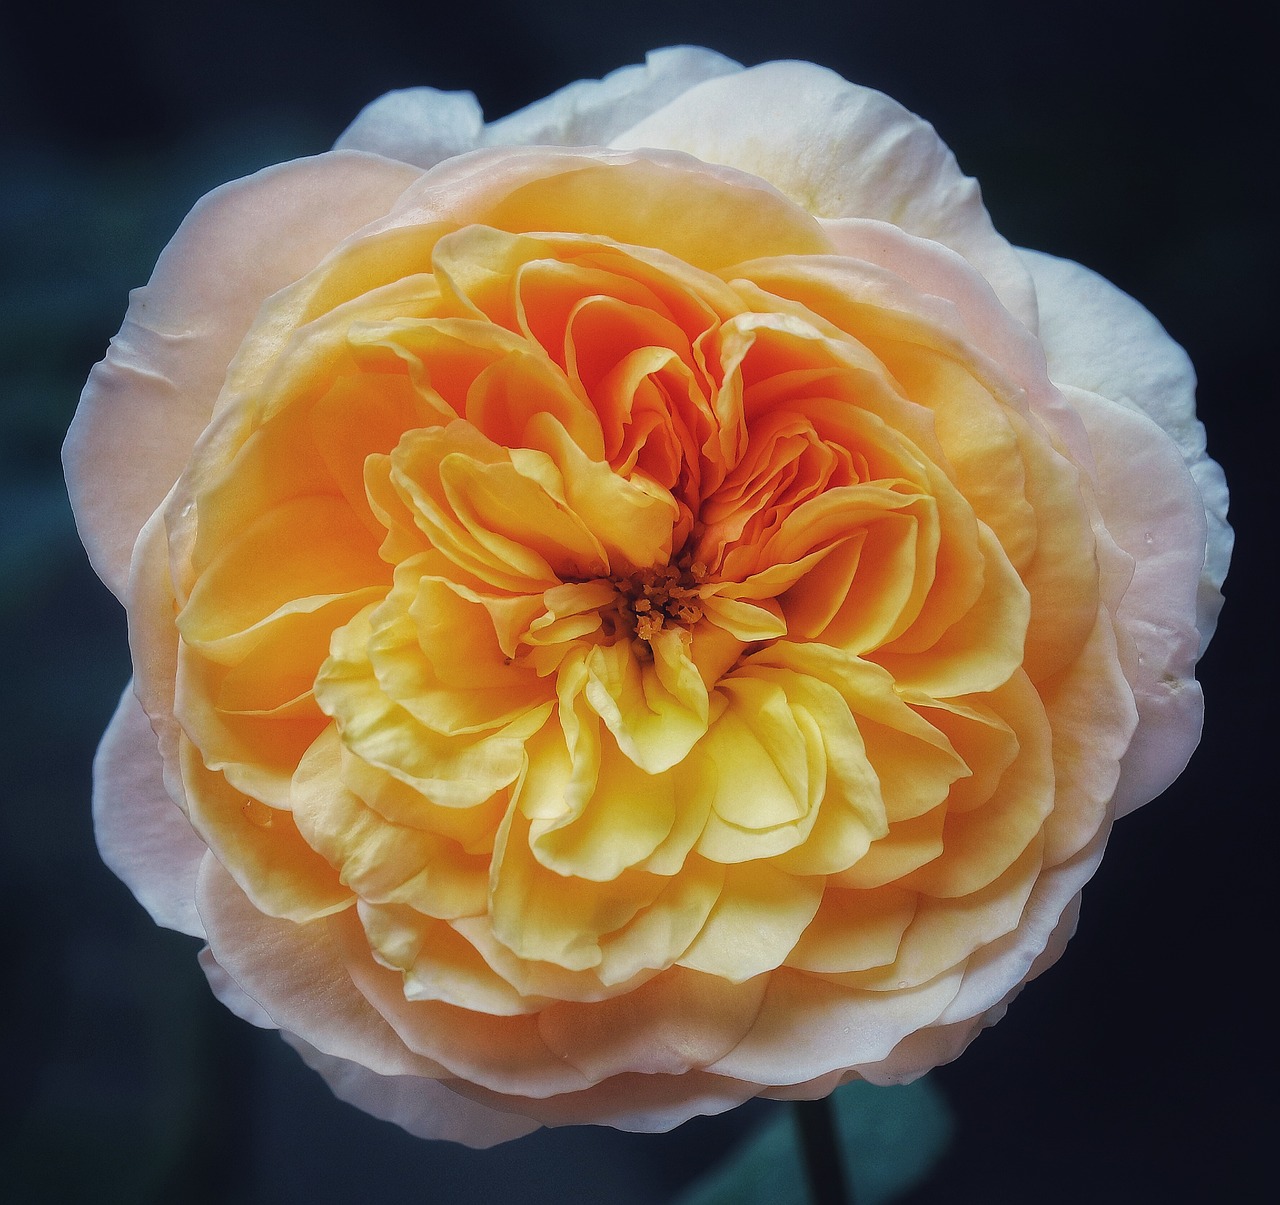 दुनिया का सबसे महंगा फुल: 90 करोड़ का एक गुलाब का फुल ?